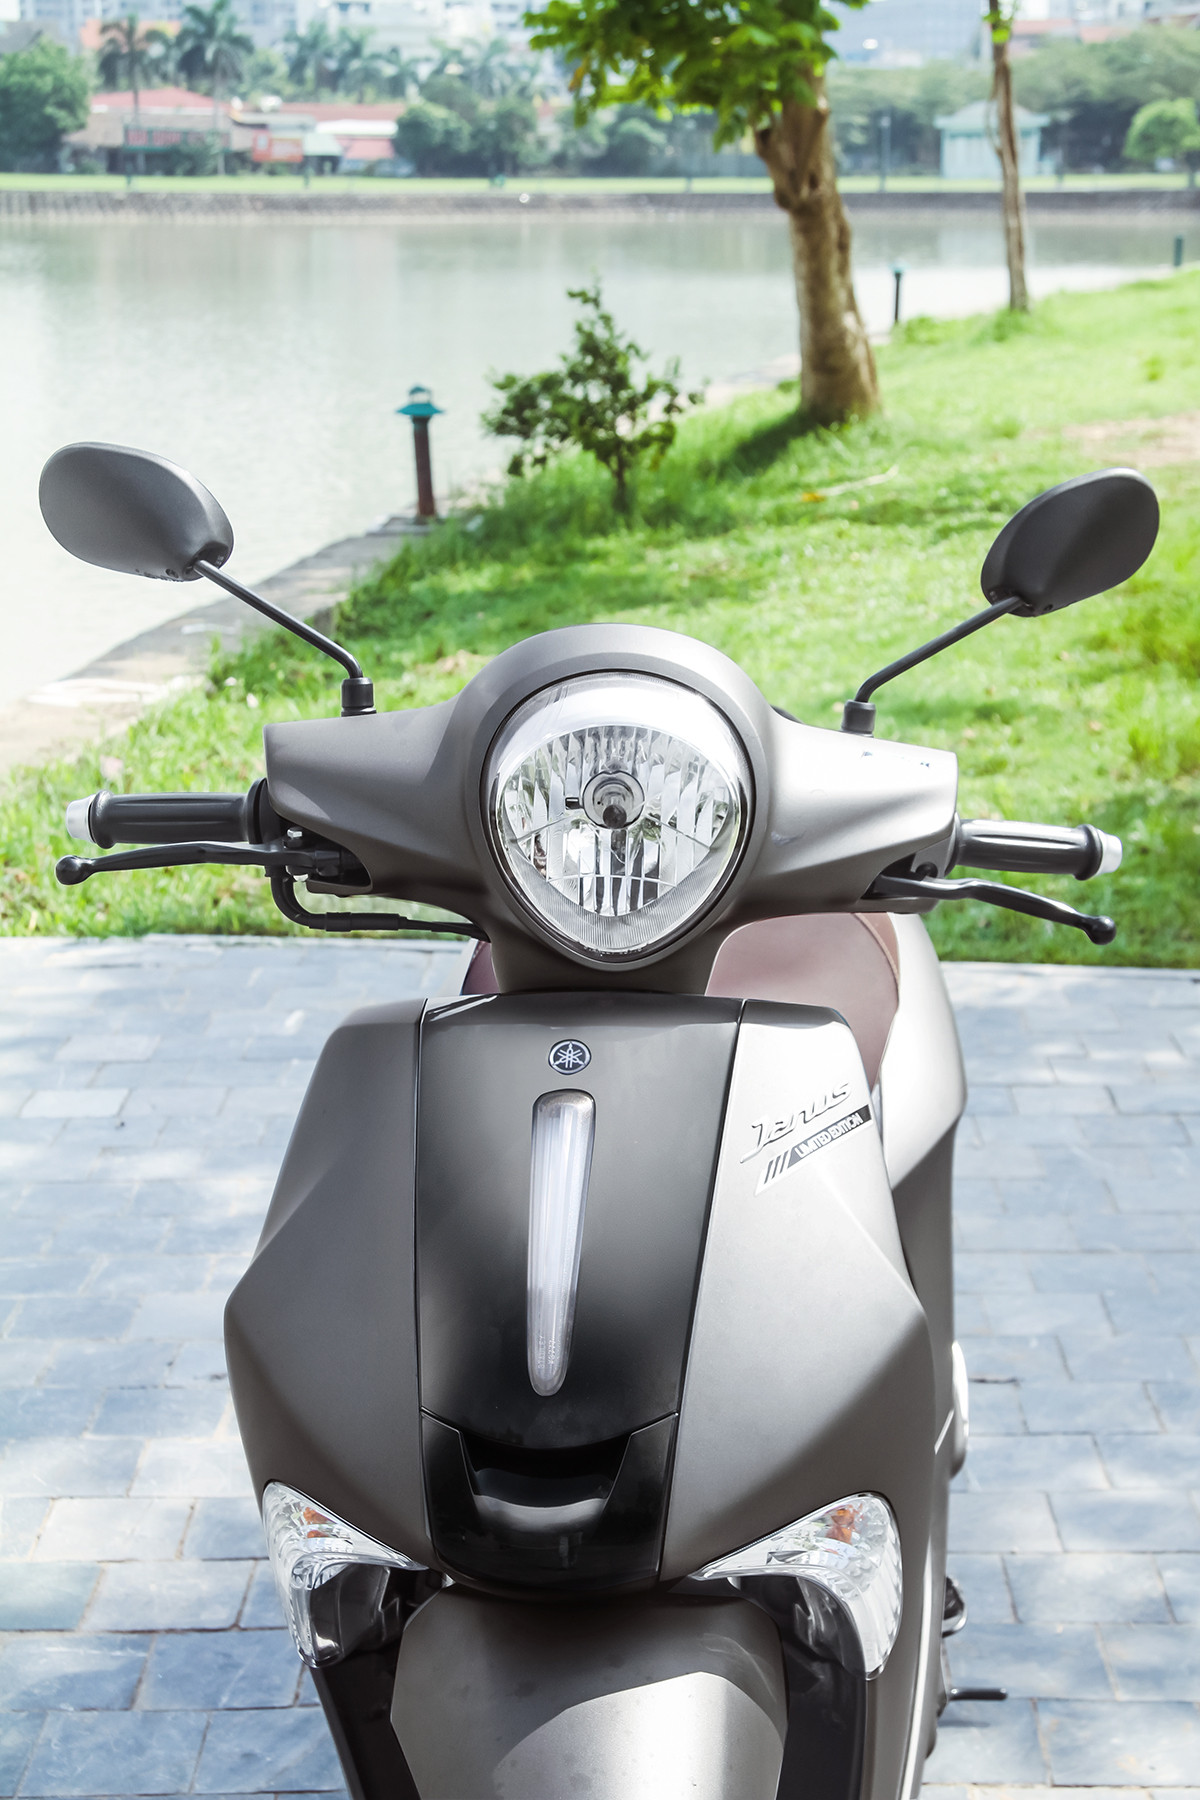 Honda Vision “rớt đài”, mẫu xe tay ga 125cc giảm giá mạnh, chỉ còn 20 triệu đồng rẻ nhất Việt Nam - ảnh 2